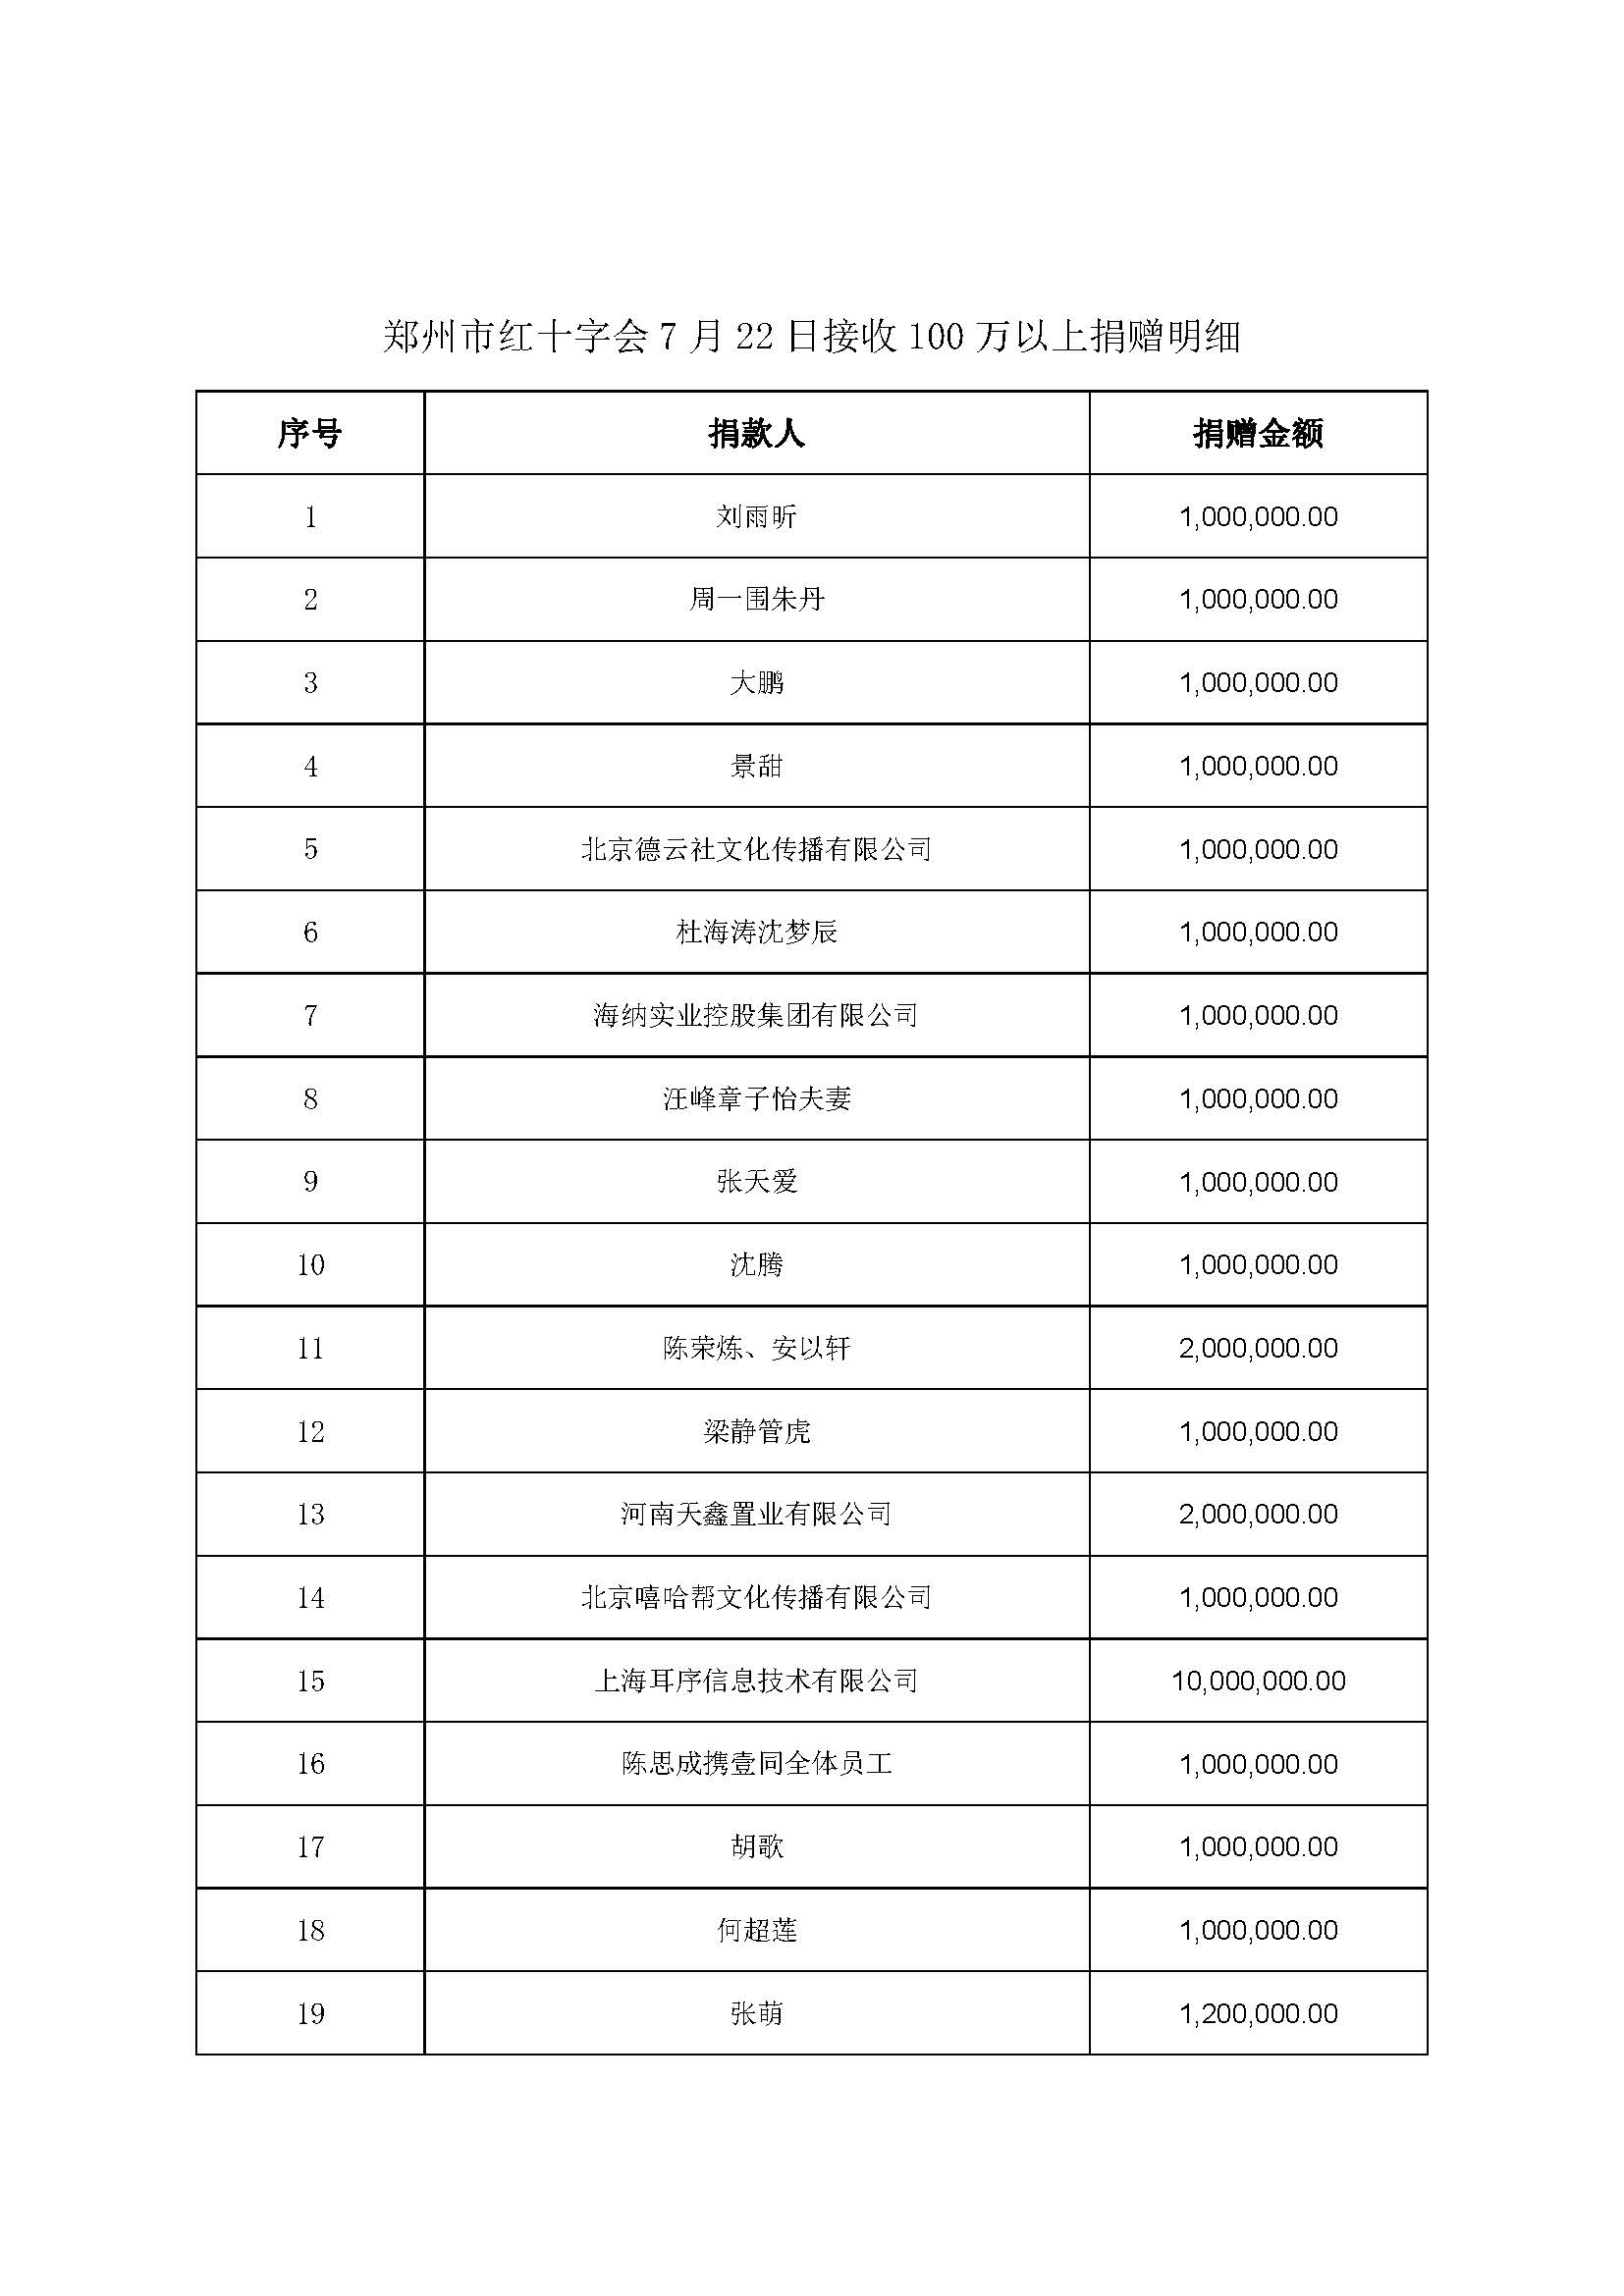 郑州捐款企业名单图片